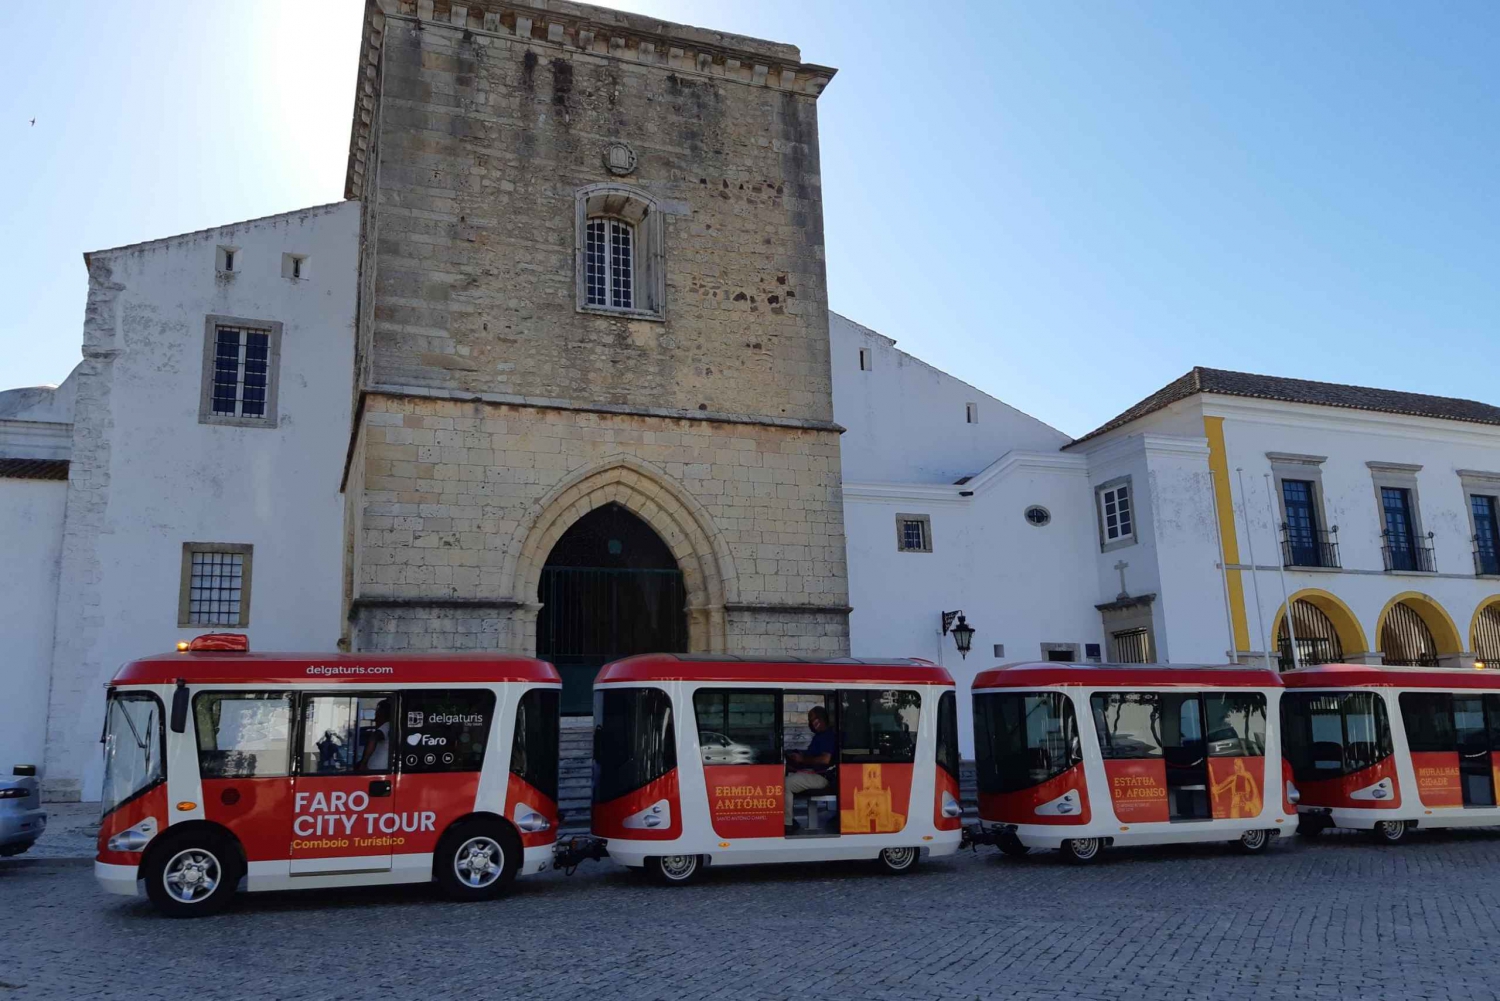 Faro: Hop On Hop Off City Tour by Tourist Train